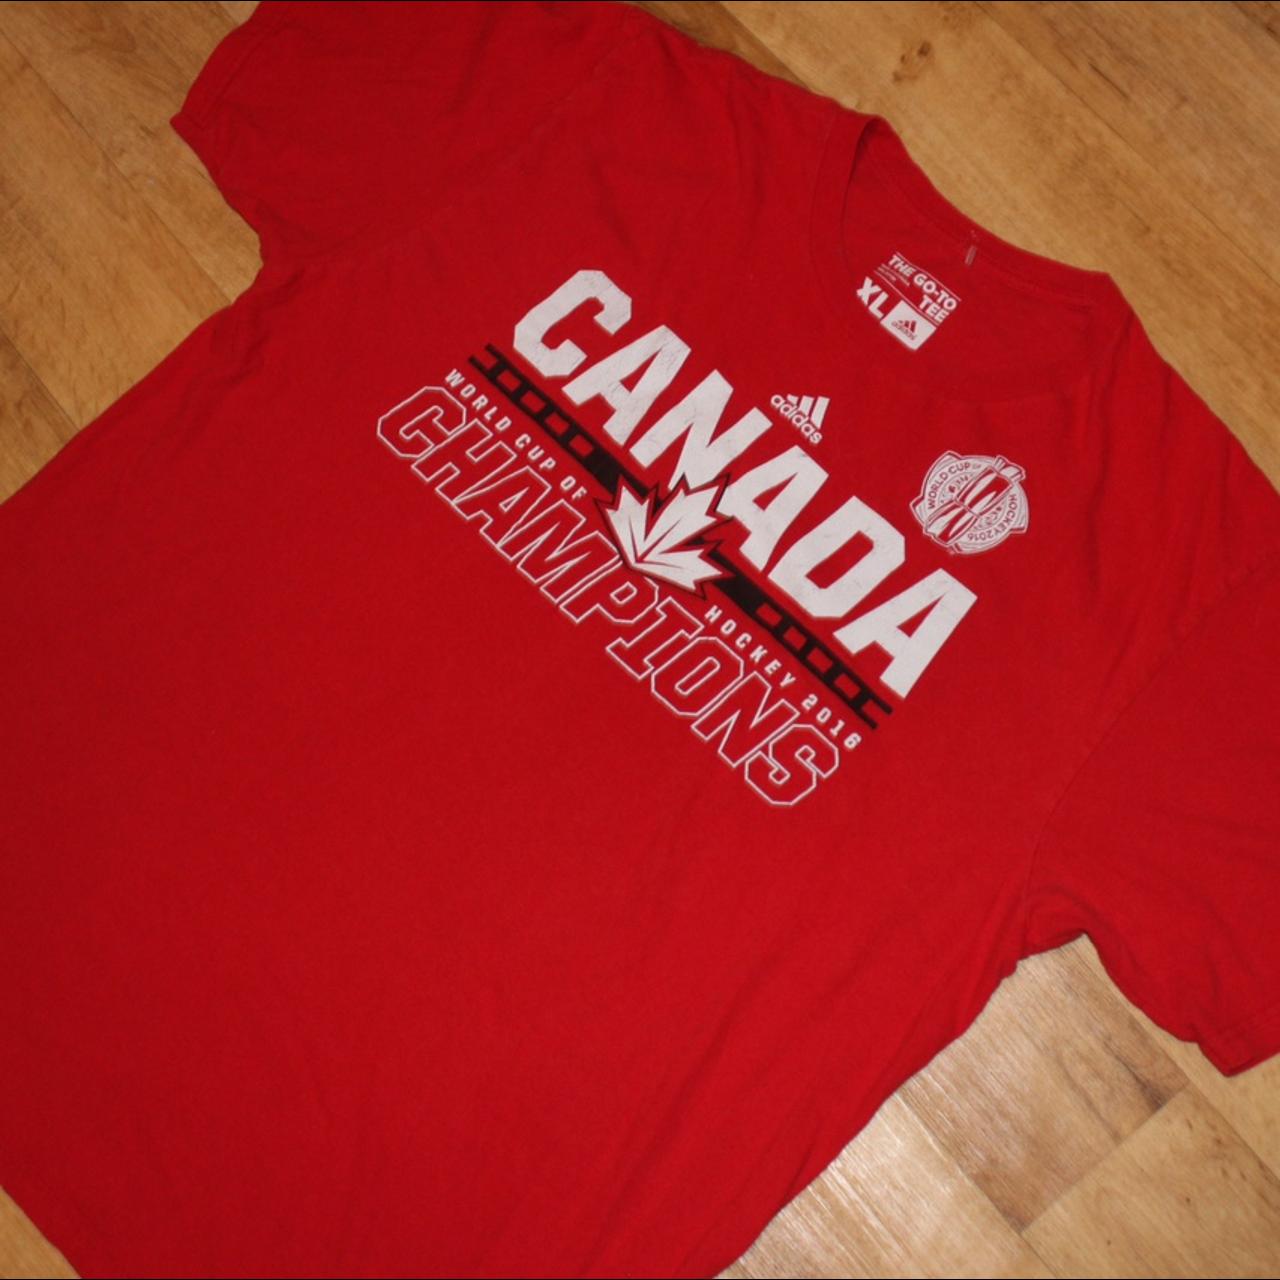 Hockey  adidas Canada